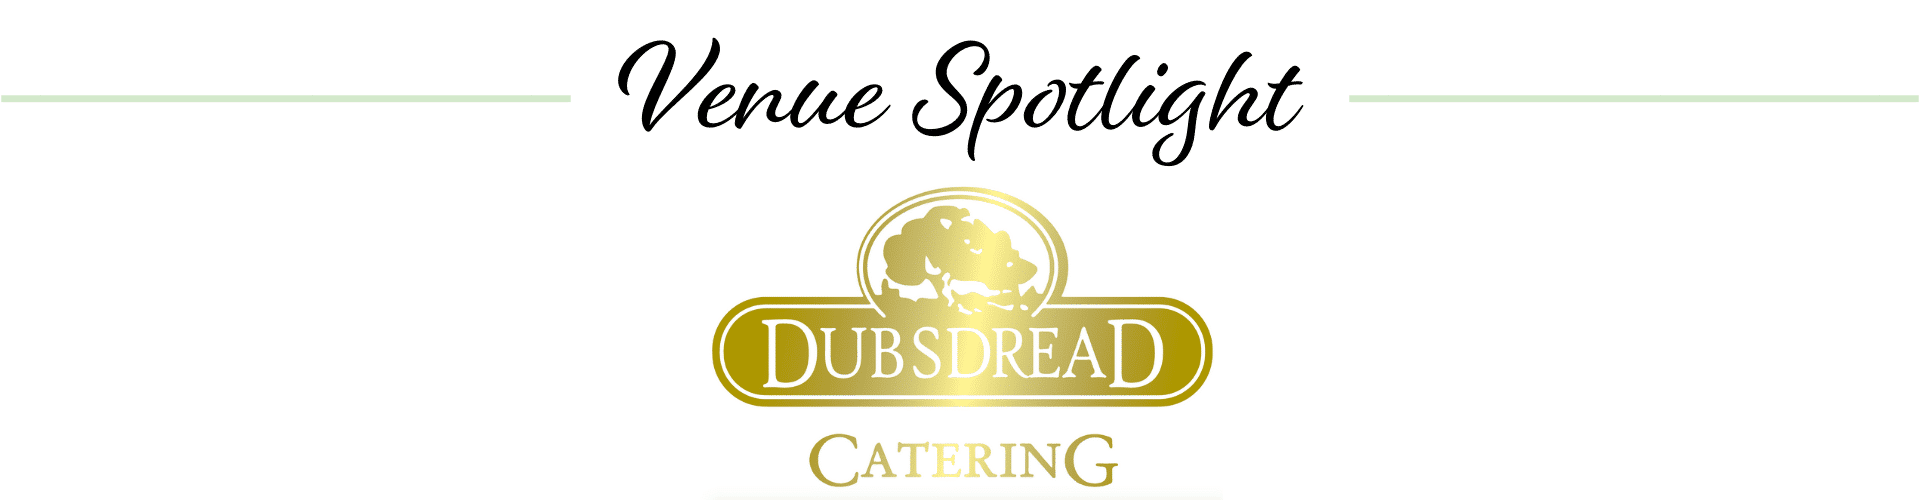 Dubsdread Catering logo